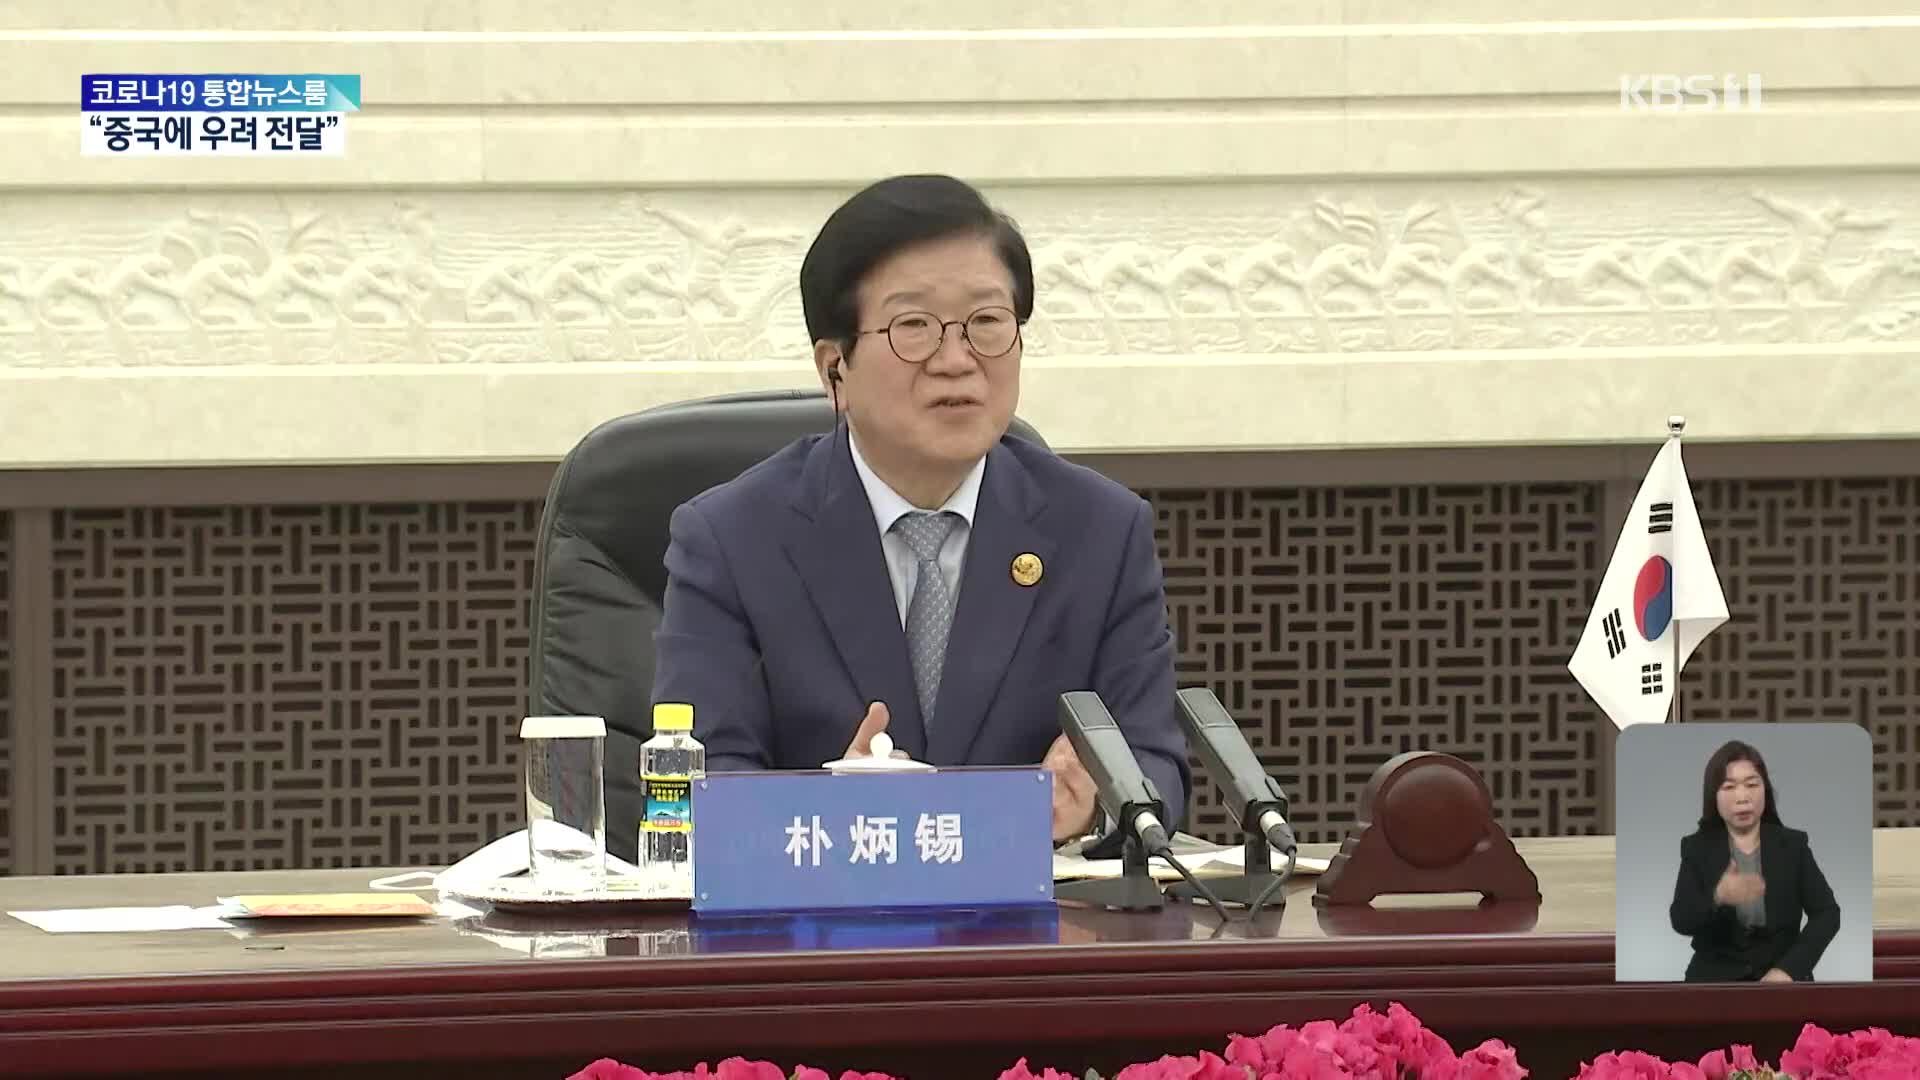 국회의장 “중국, ‘한복’ 관련 한국 관심 고려하겠다고 밝혀”